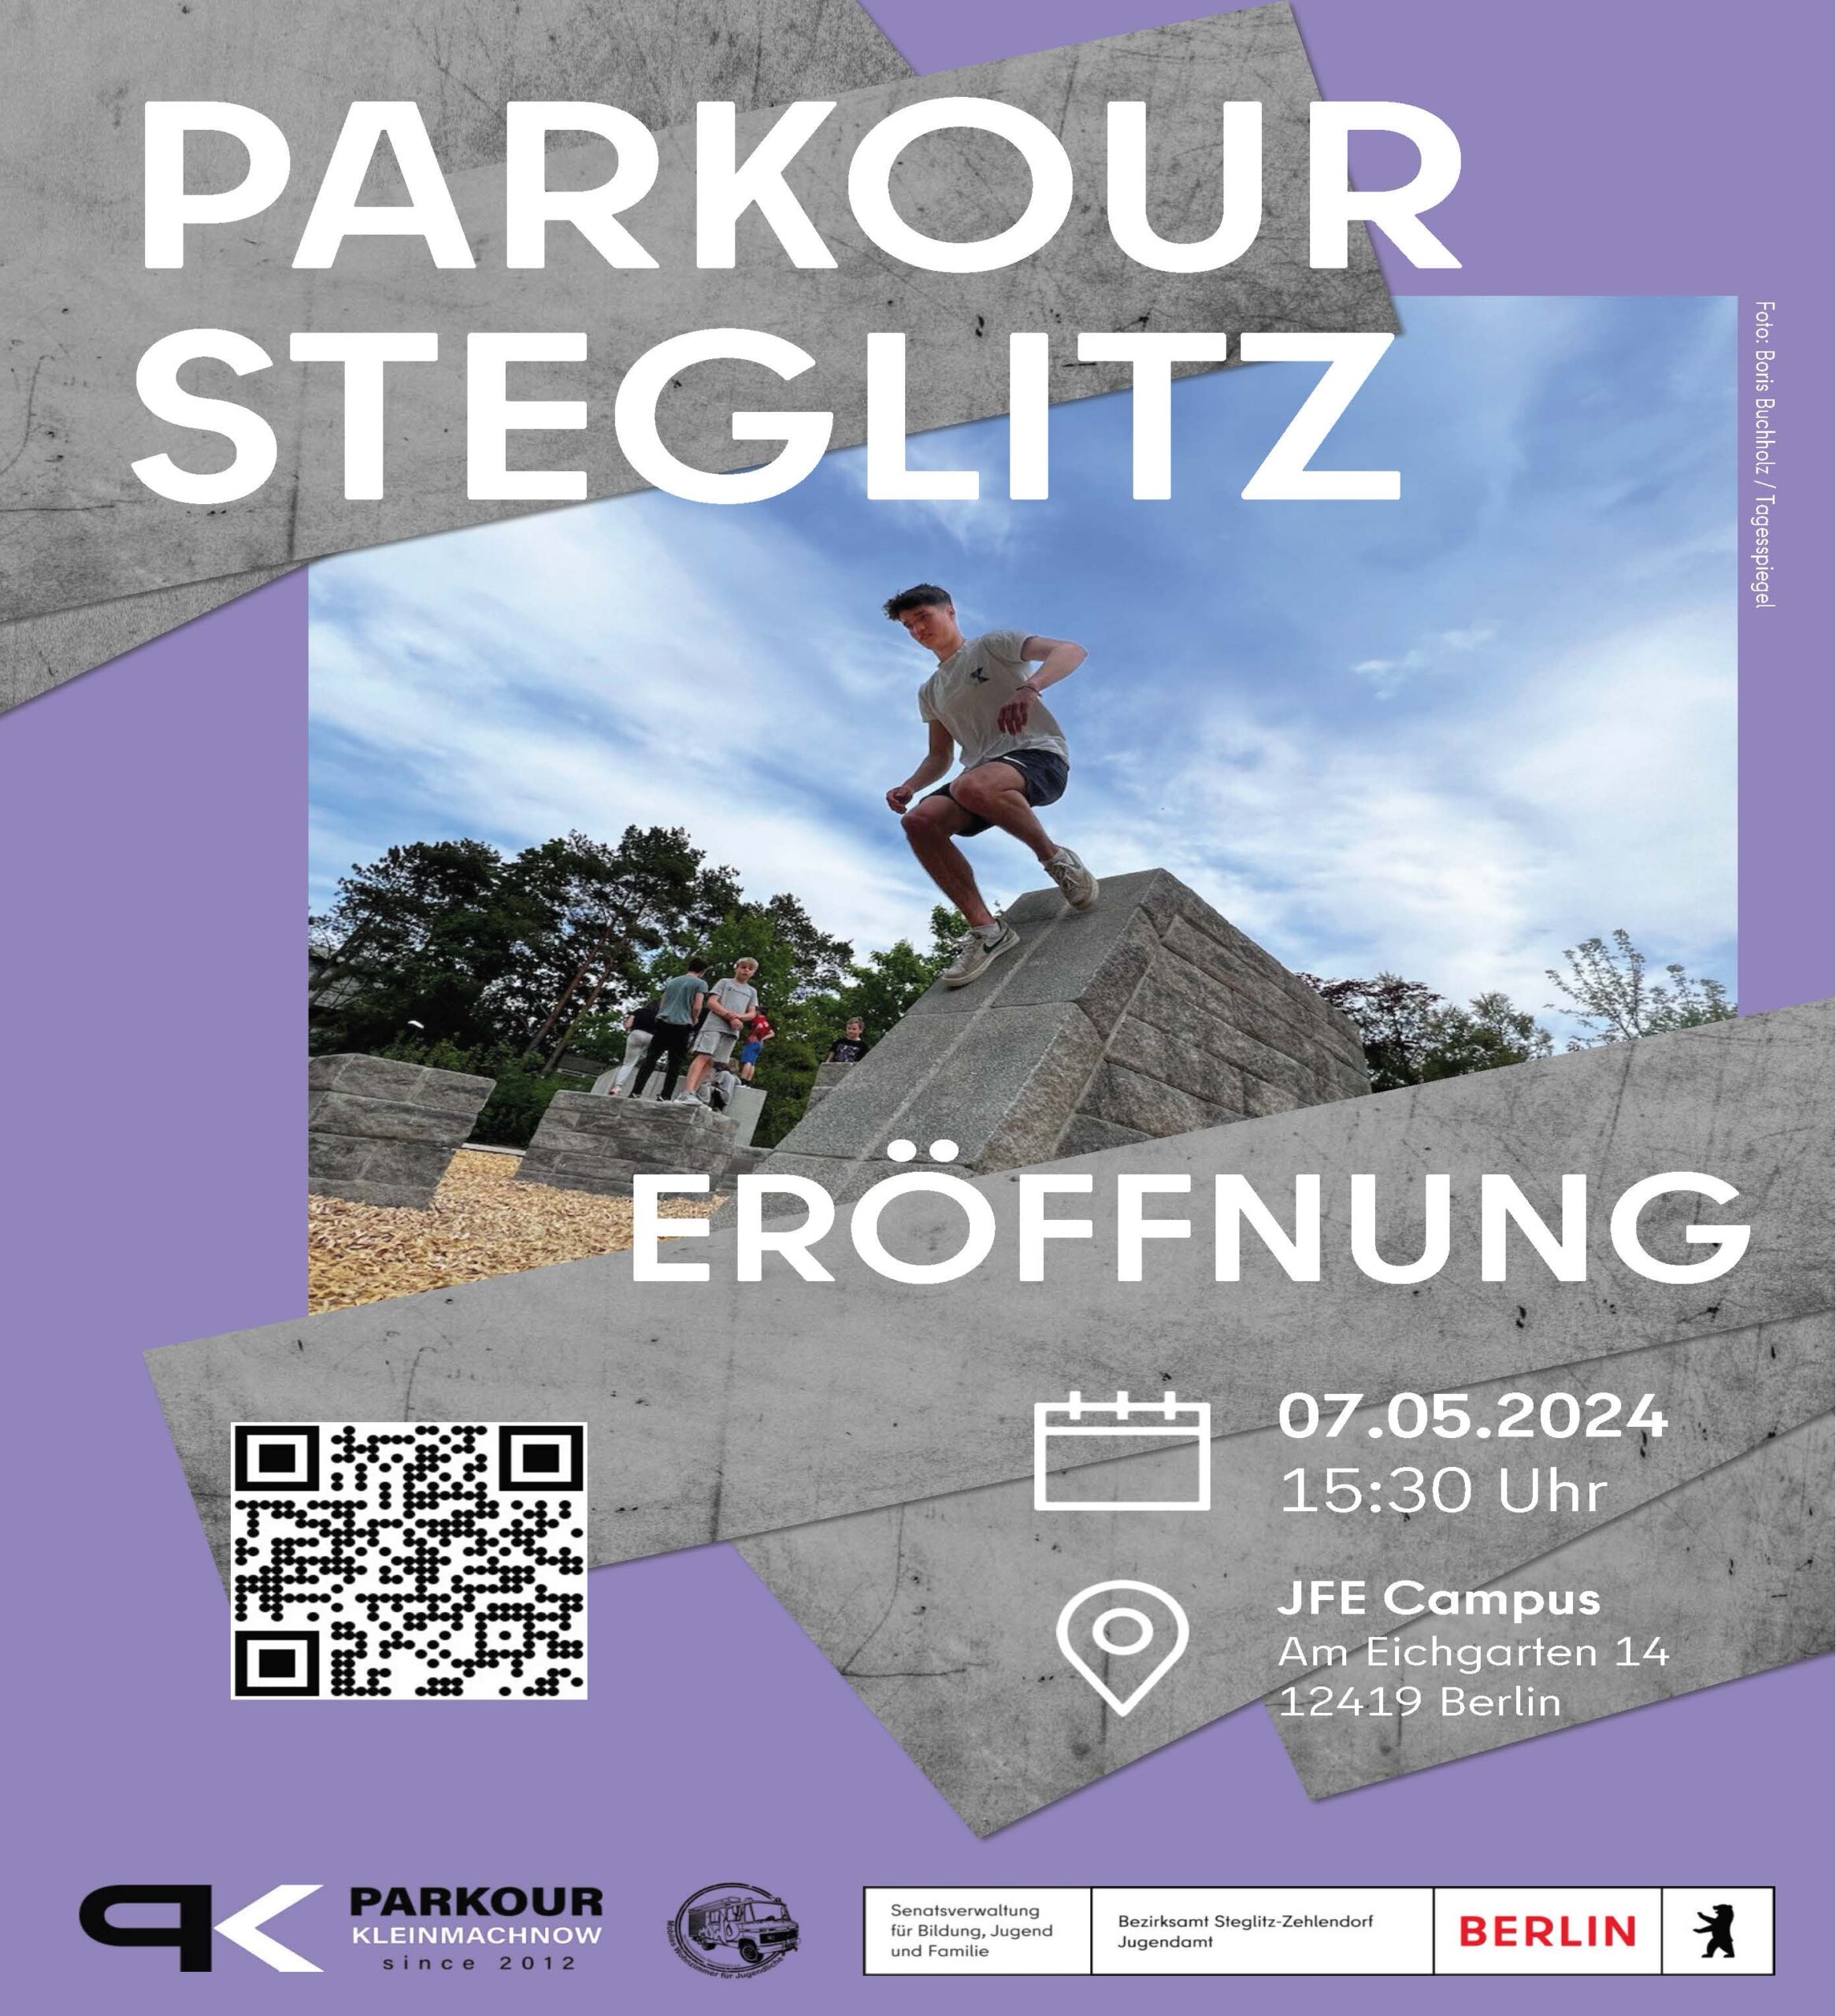 Eröffnung Parkouranlage Steglitz 07.05